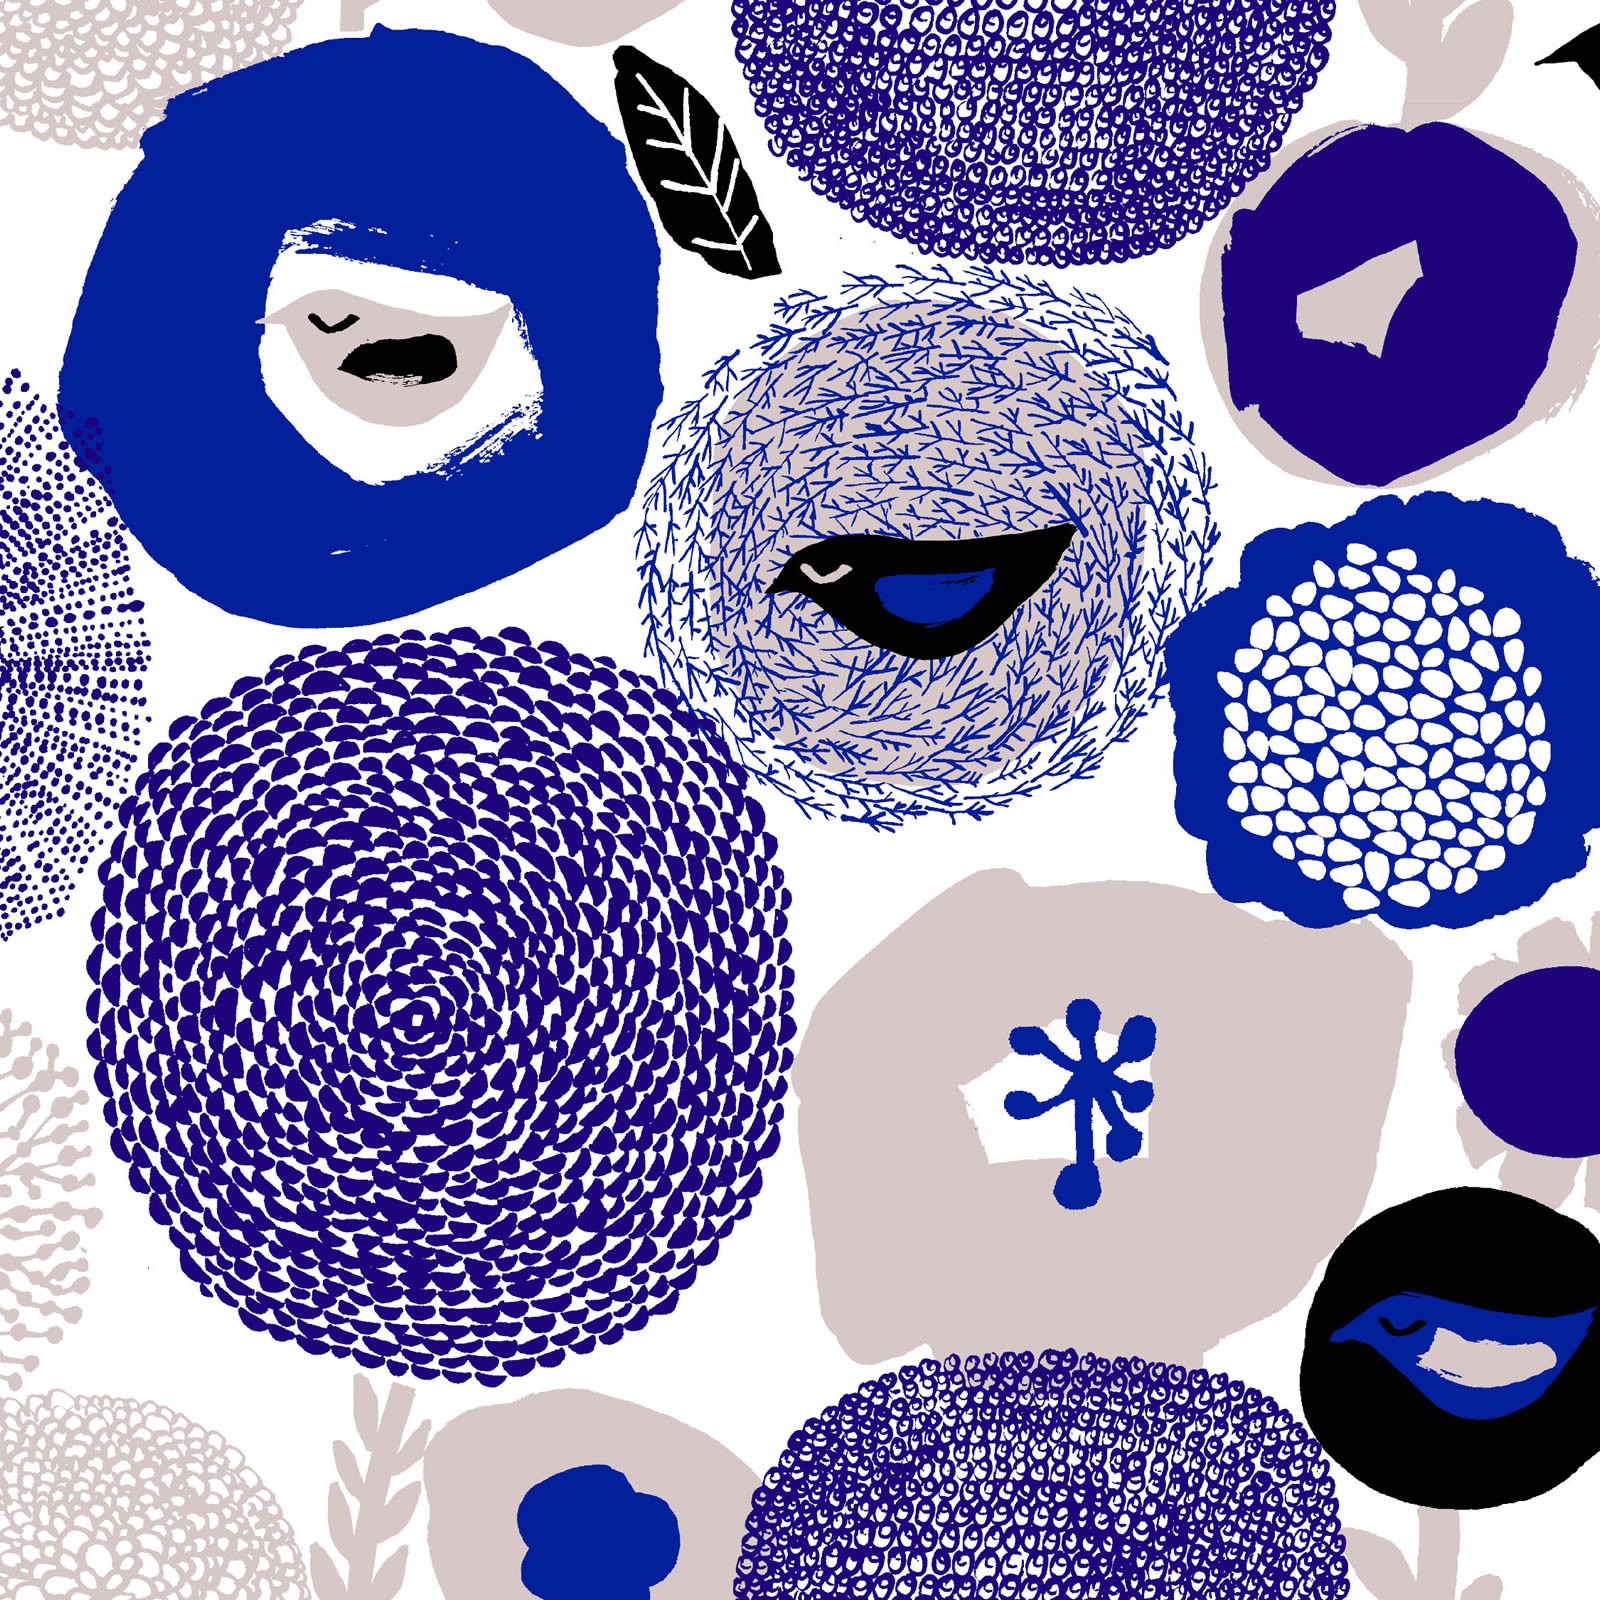 芬蘭Kauniste純棉布料 / 紫色星期天 (1單位：50cm)